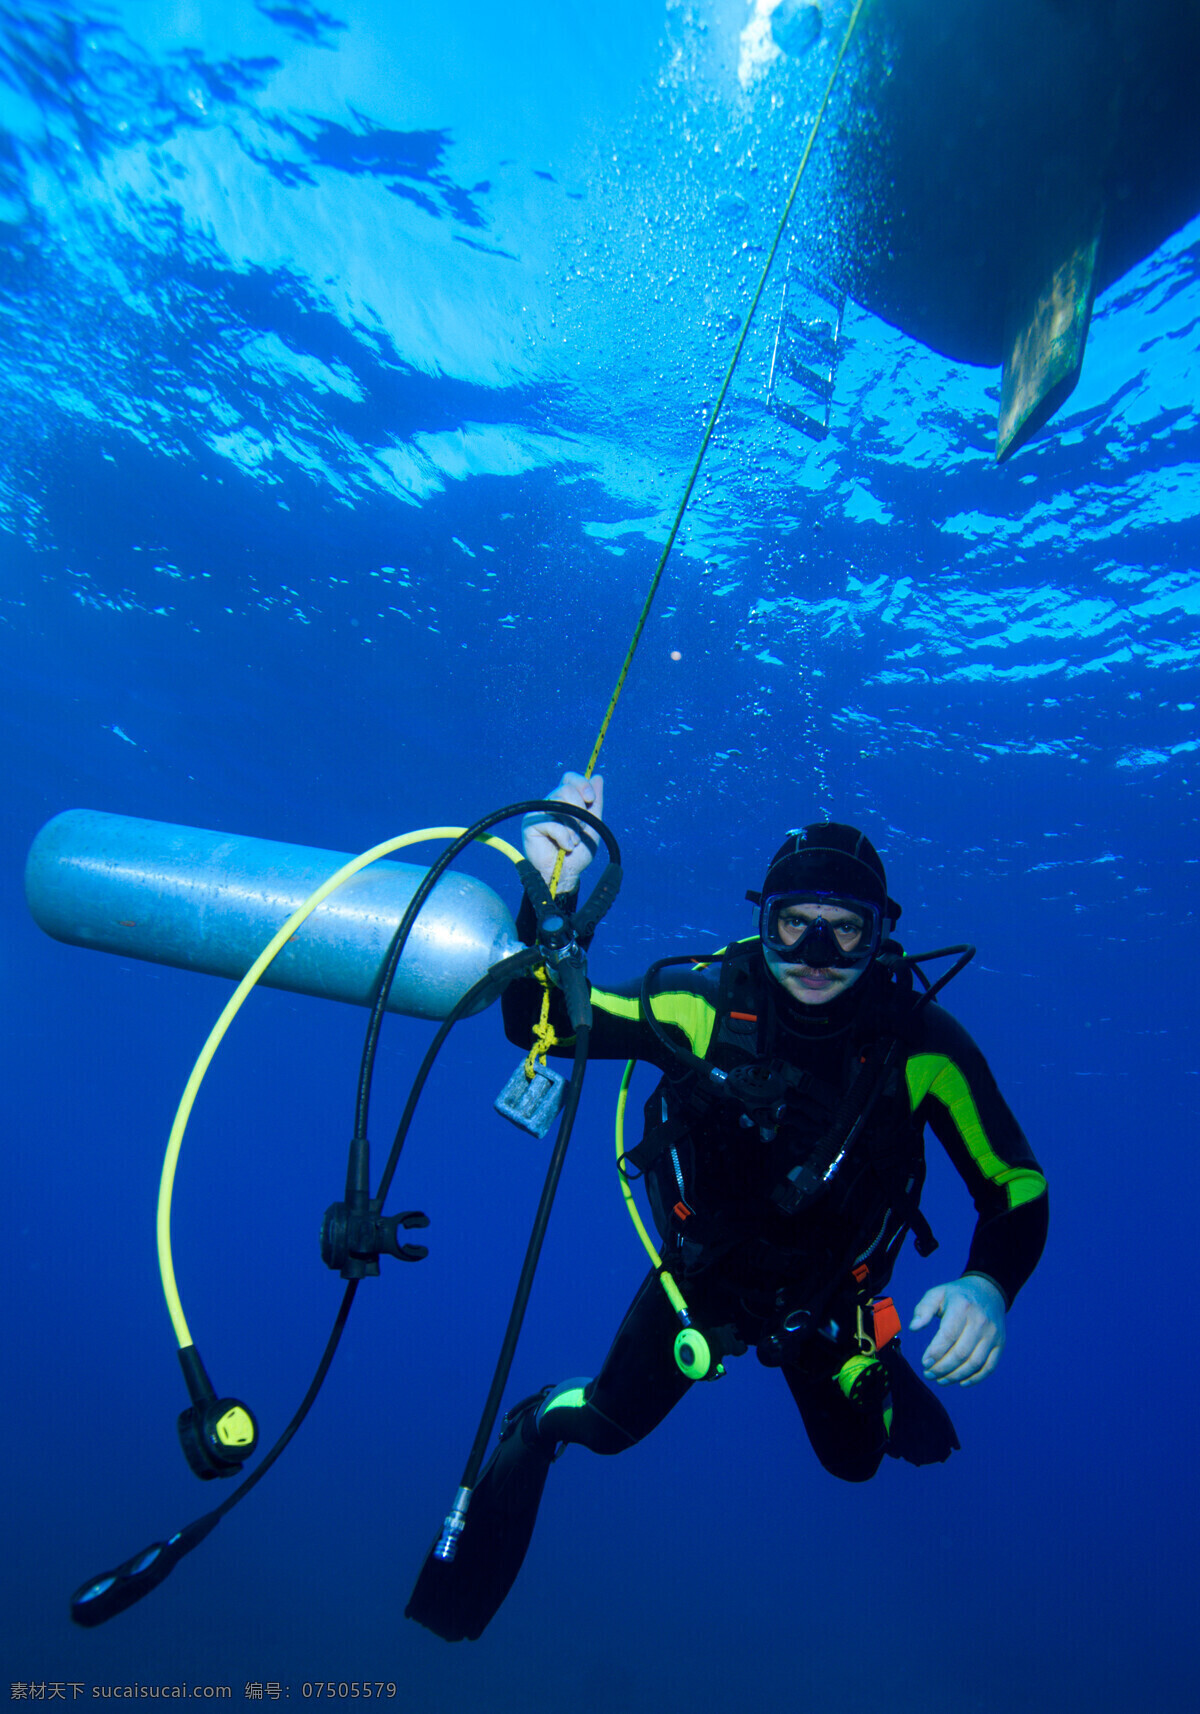 氧气瓶 男人 人物 潜水 海底 潜水设备 生活人物 人物图片